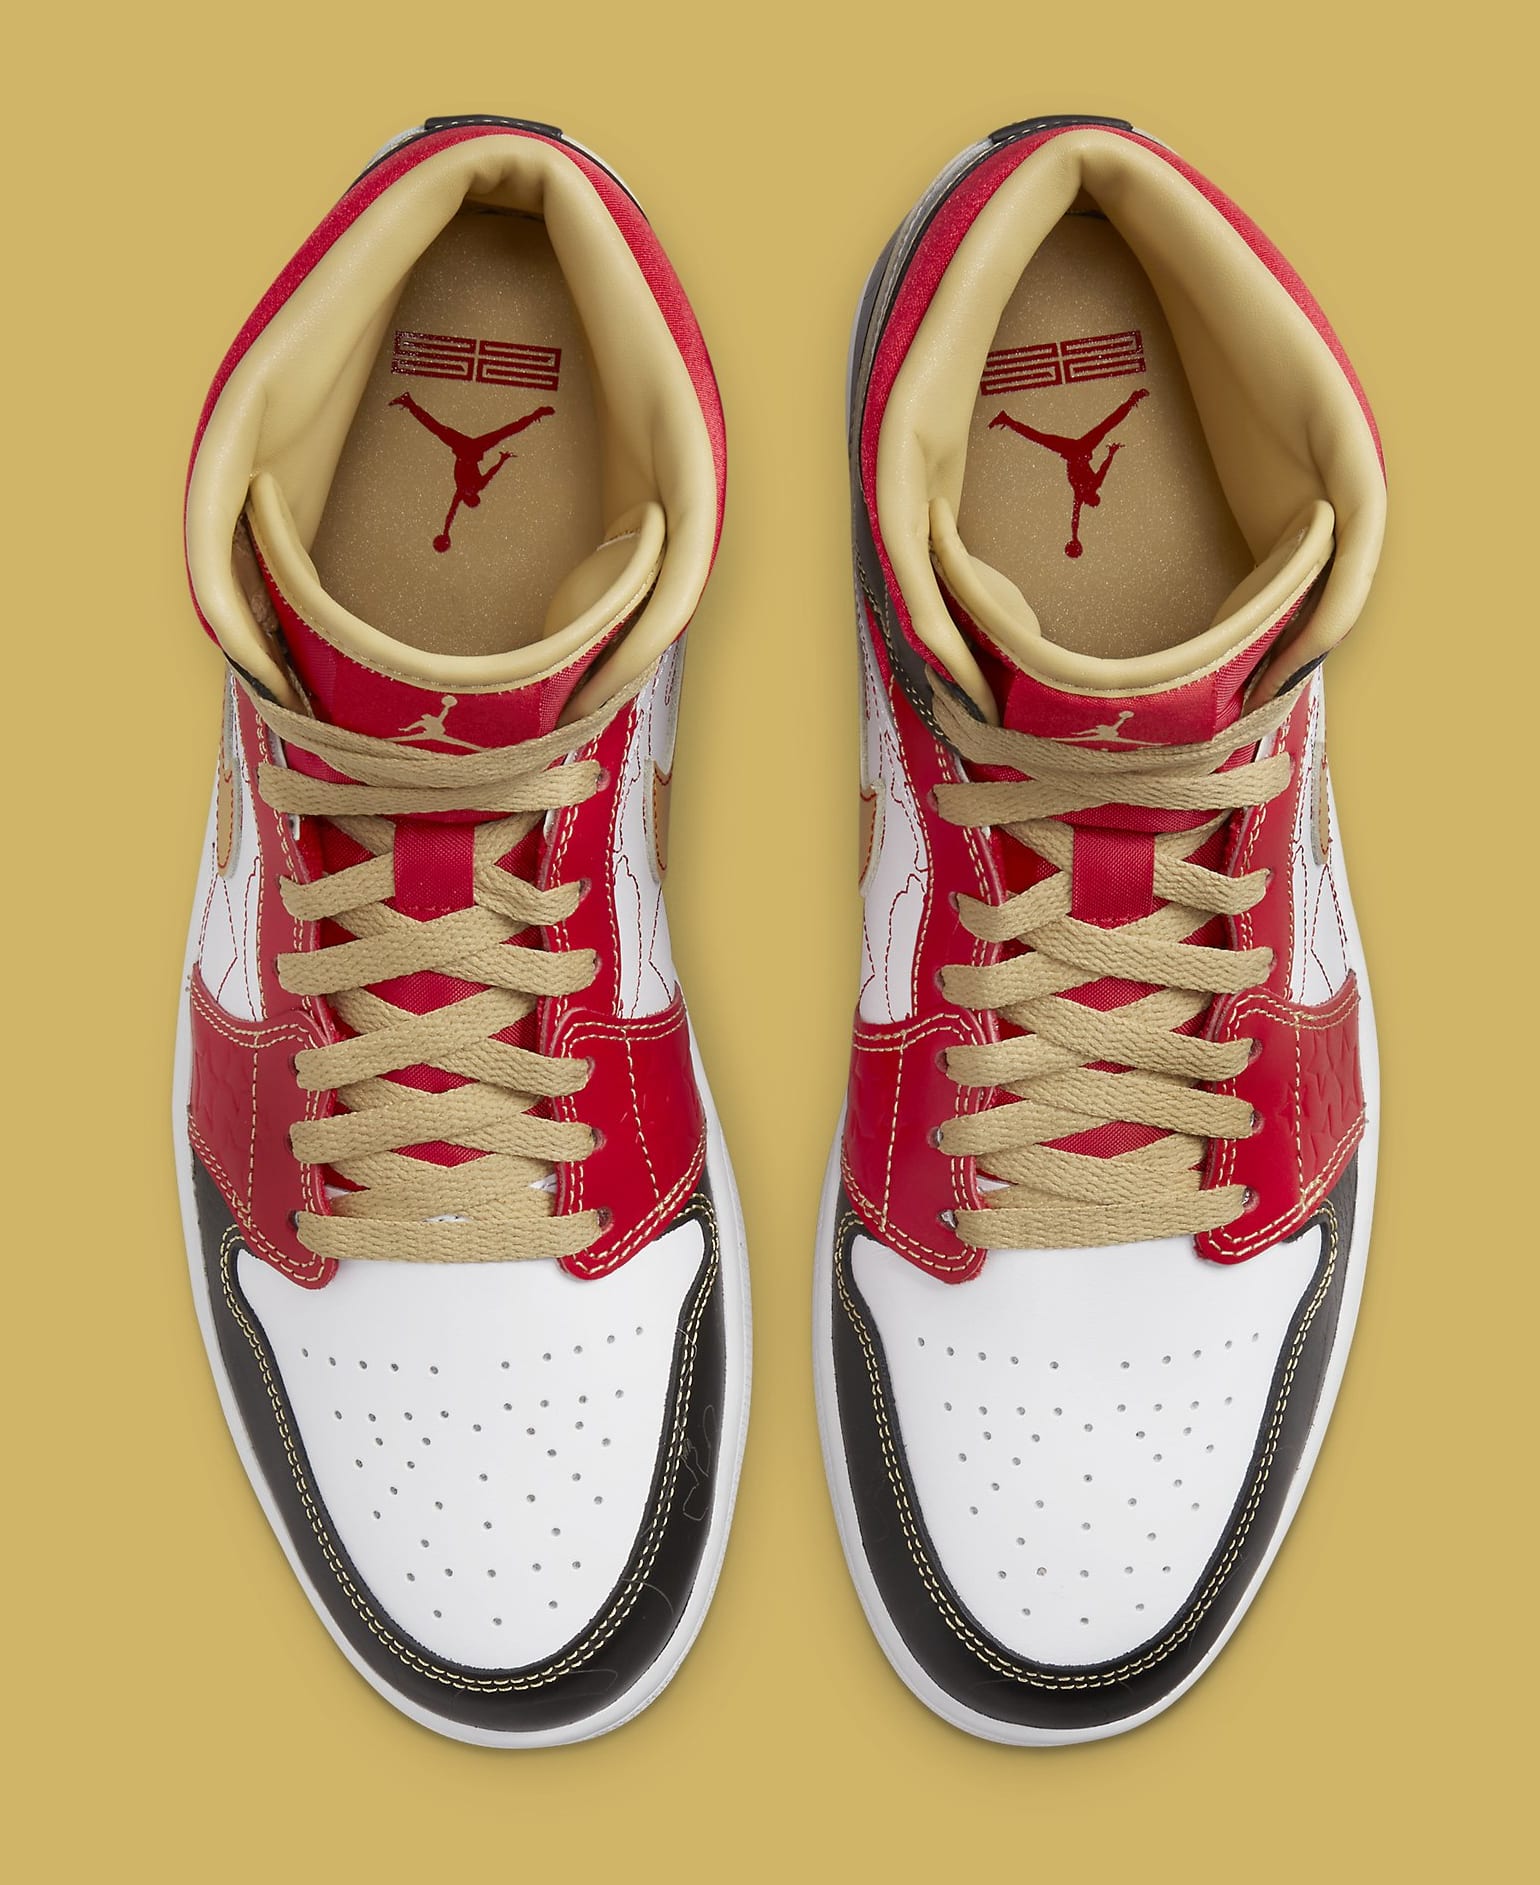 Giày Air Jordan 1 Mid Xing Qi là một trong những phiên bản đặc biệt dành riêng cho thị trường trung quốc. và sau đây là một trong những lý do chúng ta nên lựa chọn đôi giày này qua bài viết của swagger